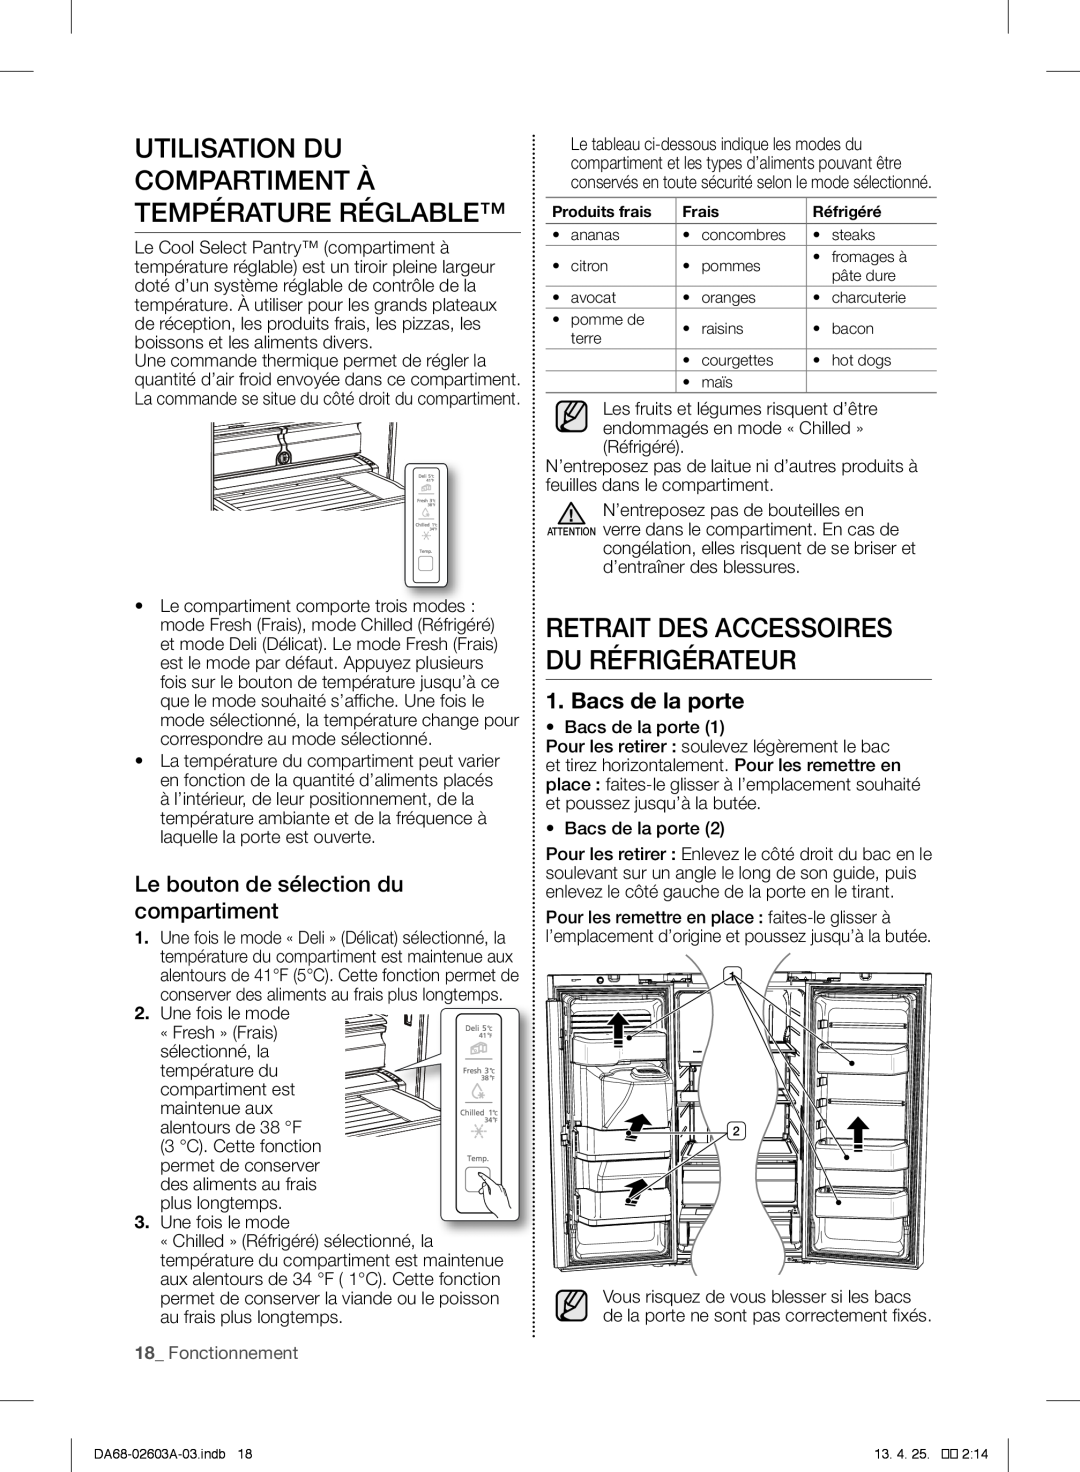 Samsung RF323TEDBBC Utilisation Du Compartiment À Température Réglable, Retrait Des Accessoires Du Réfrigérateur 